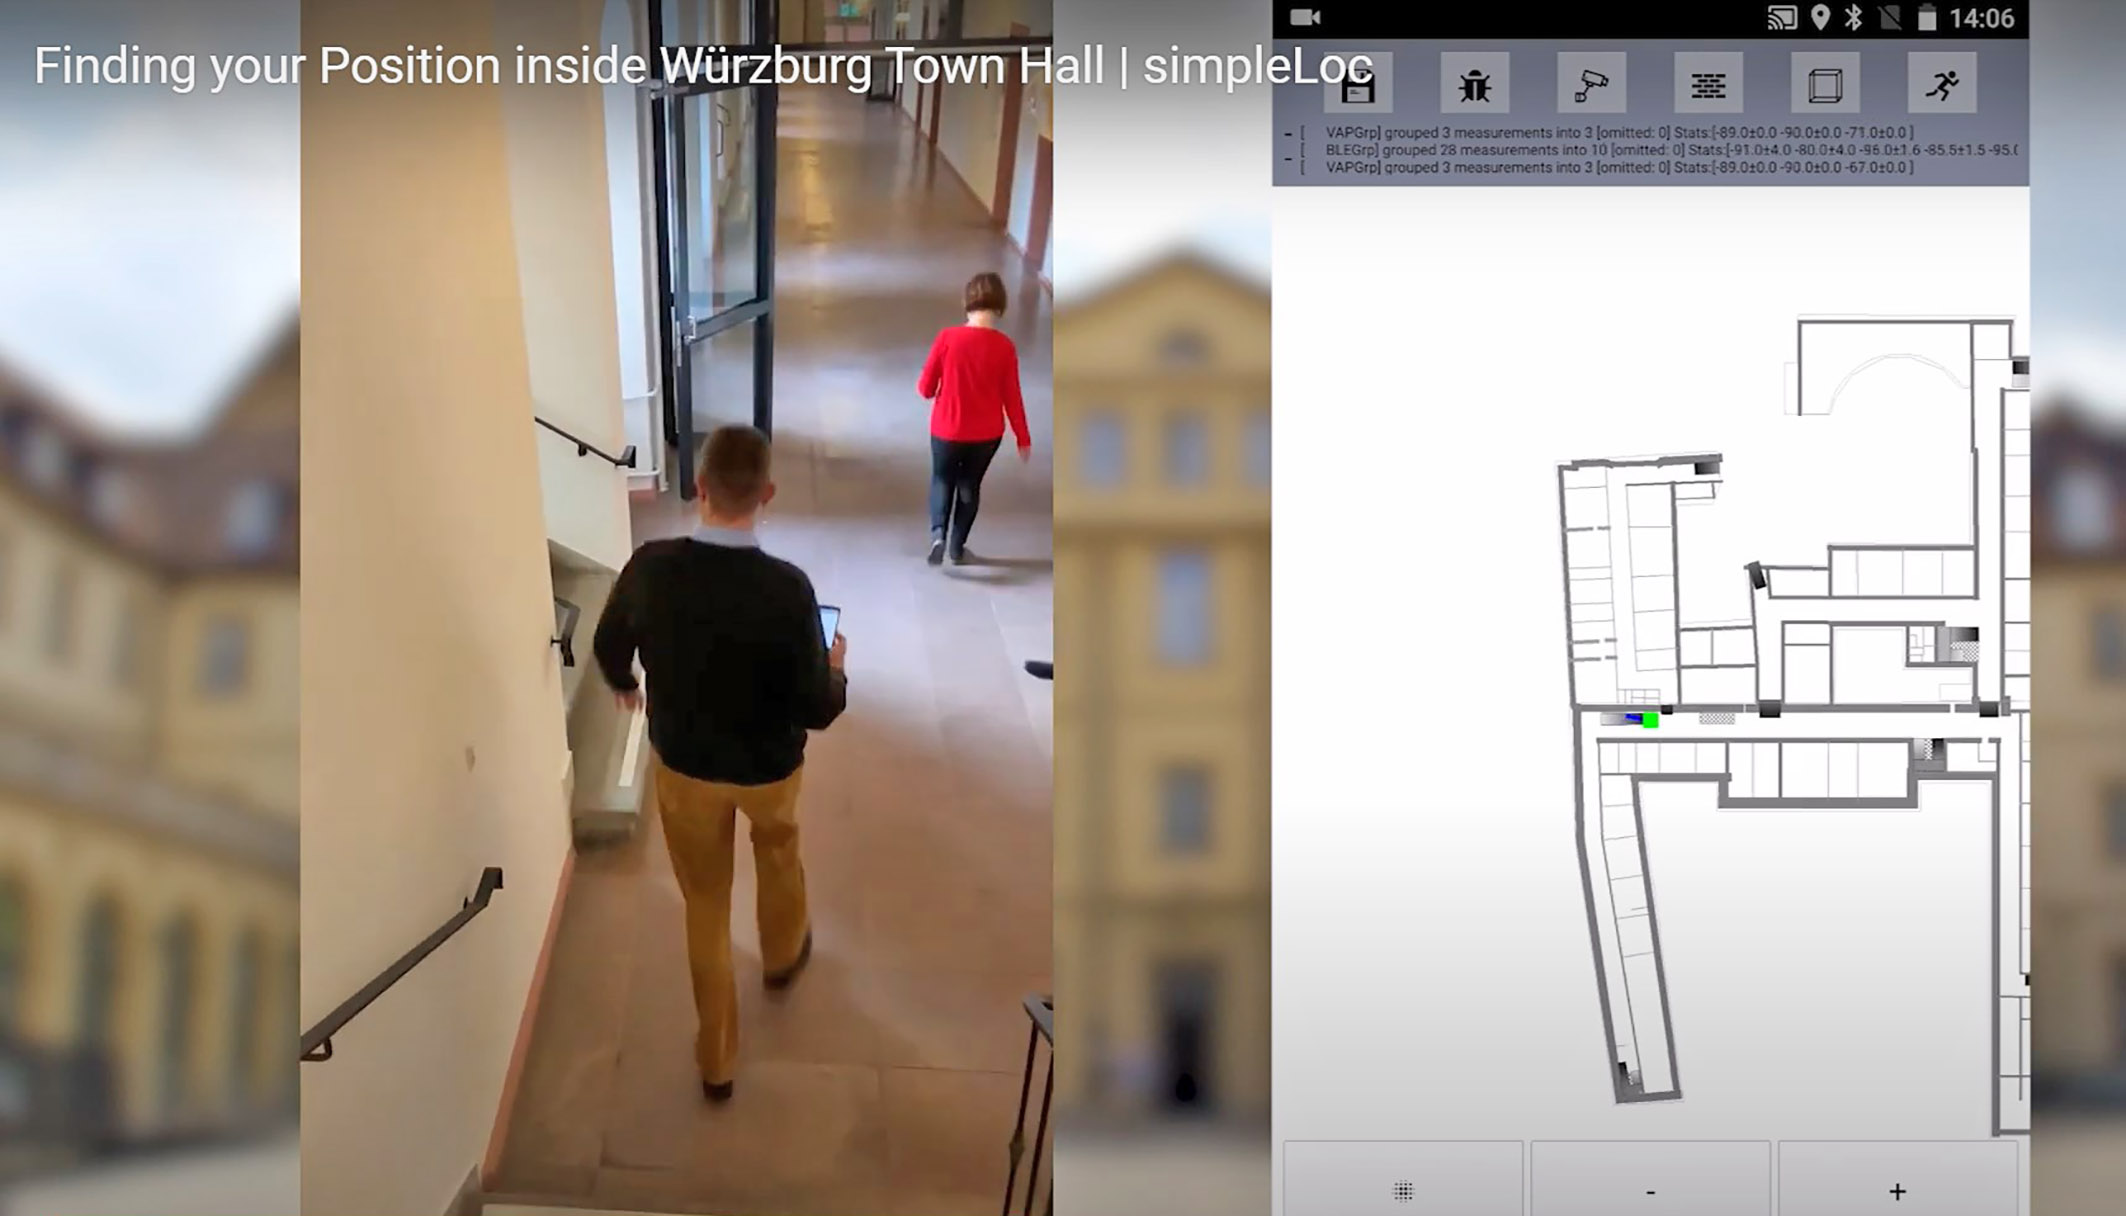 Klaus Walther erkundet mit der Navigationssoftware simpleLoc Wege im verwinkelten Würzburger Rathaus. Rechts ist das Areal zu sehen, durch das sich der Mitarbeiter bewegt. Bild: FHWS/Screenshot simpleLoc